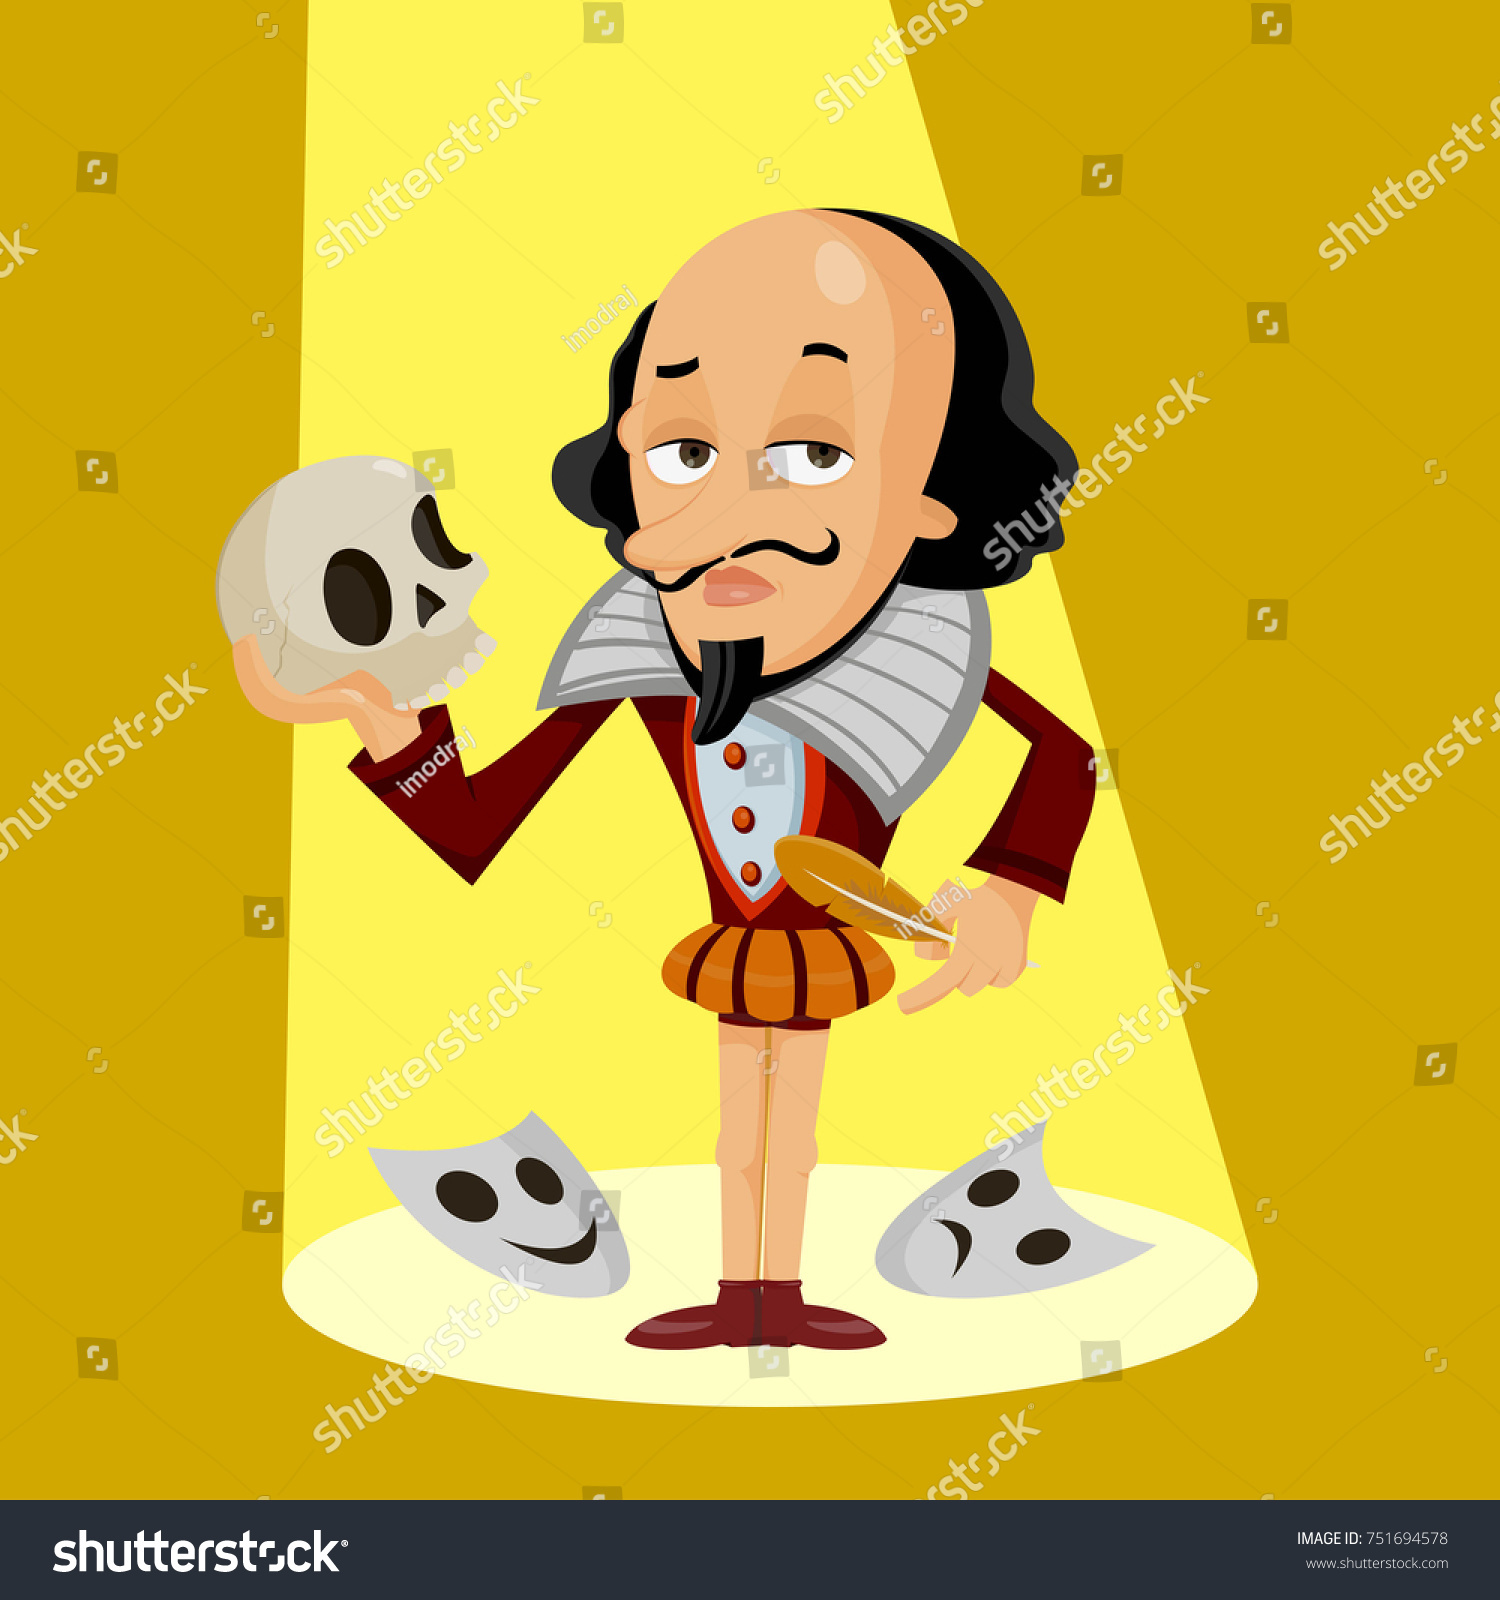 シェイクスピア 頭蓋骨 主なオブジェクト 背景が異なるレイヤーに配置され 編集が容易な シェイクスピアの面白いキャラクターのベクターイラスト のベクター画像素材 ロイヤリティフリー